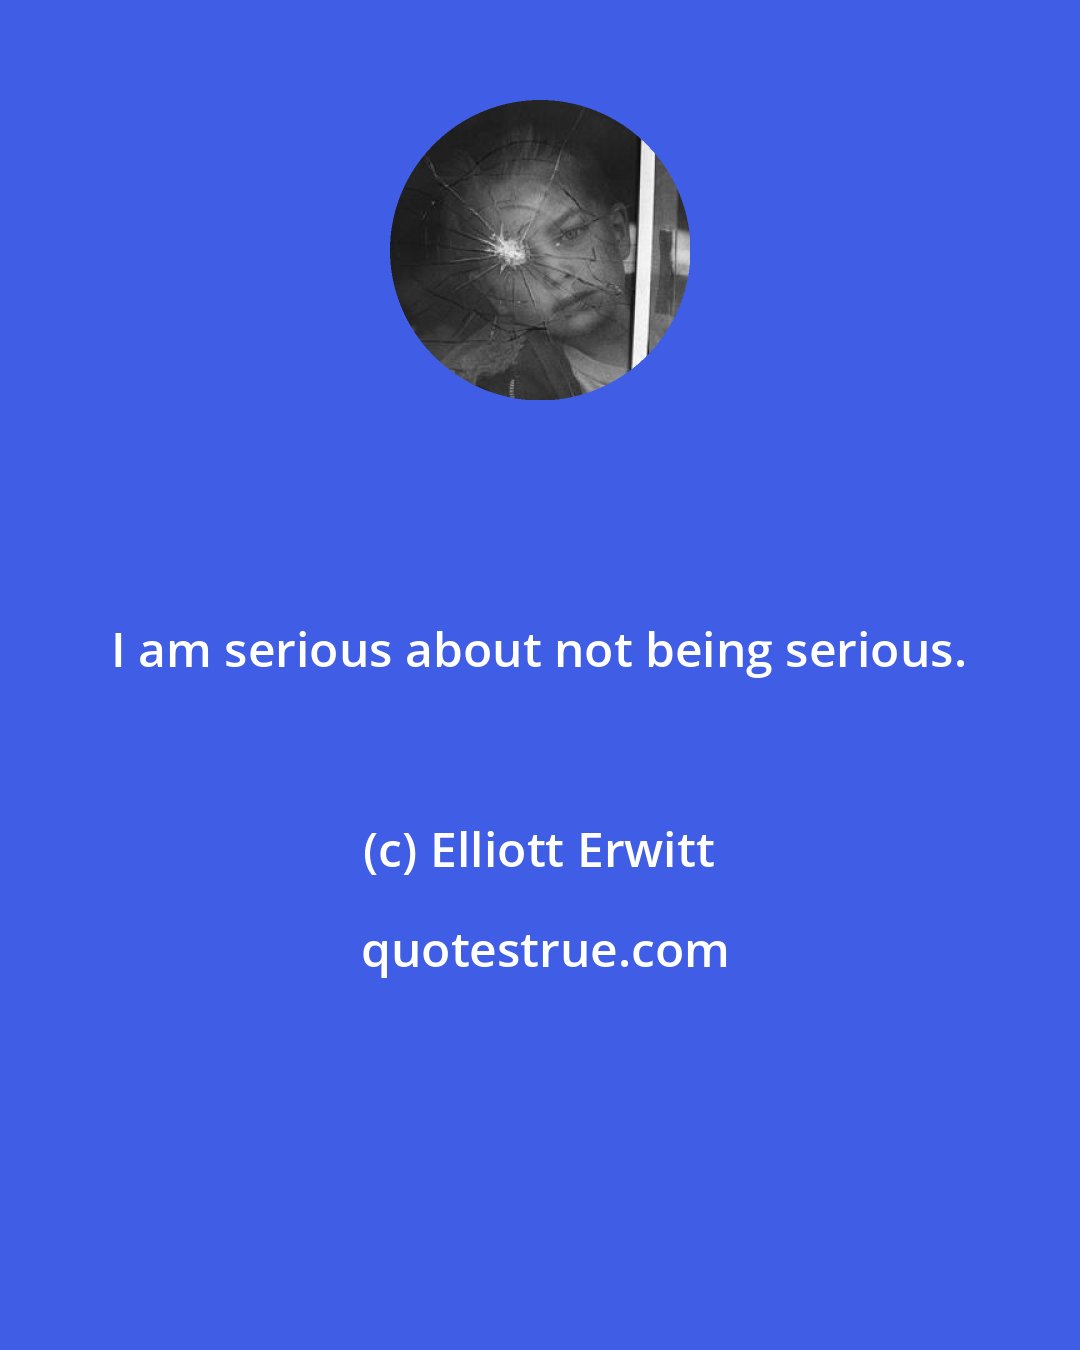 Elliott Erwitt: I am serious about not being serious.